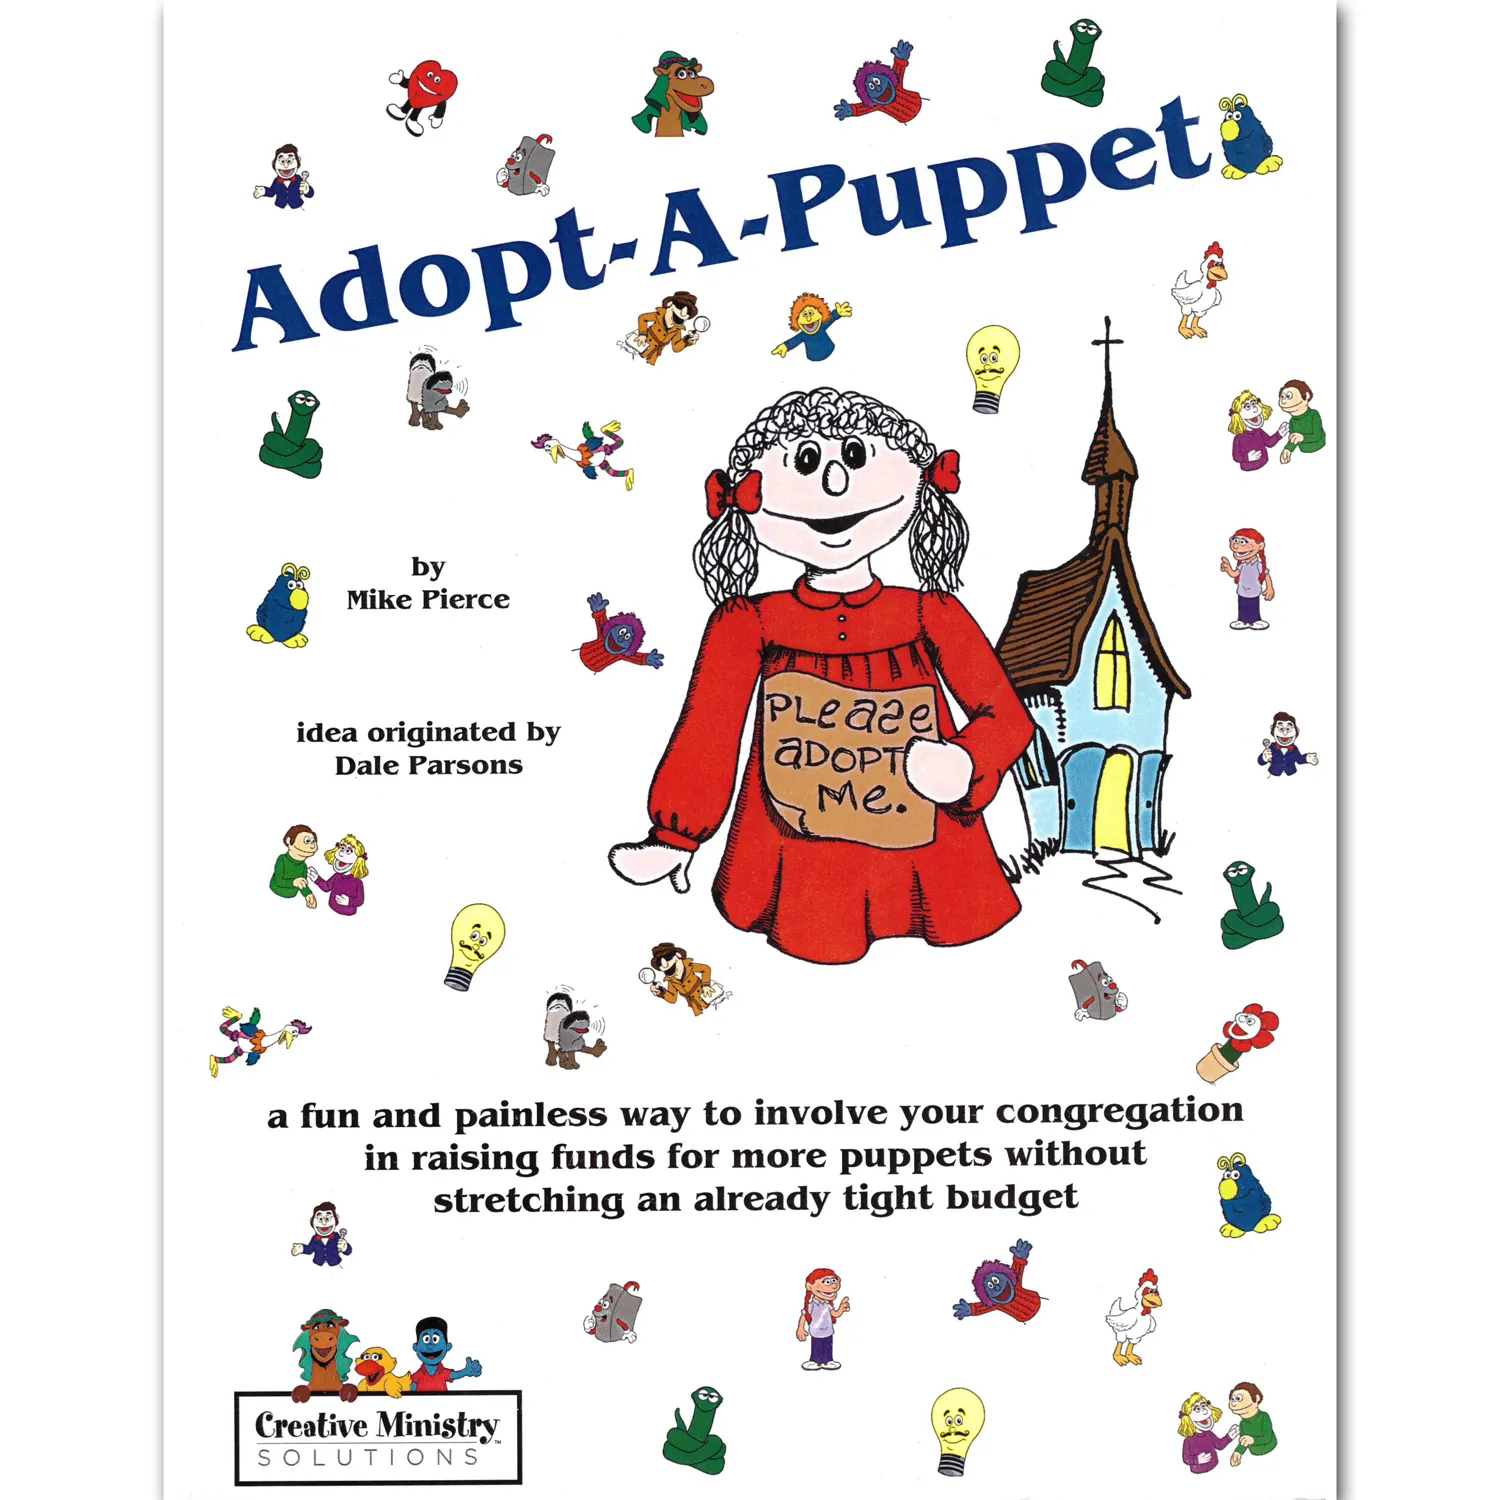 Adopt-A-Puppet